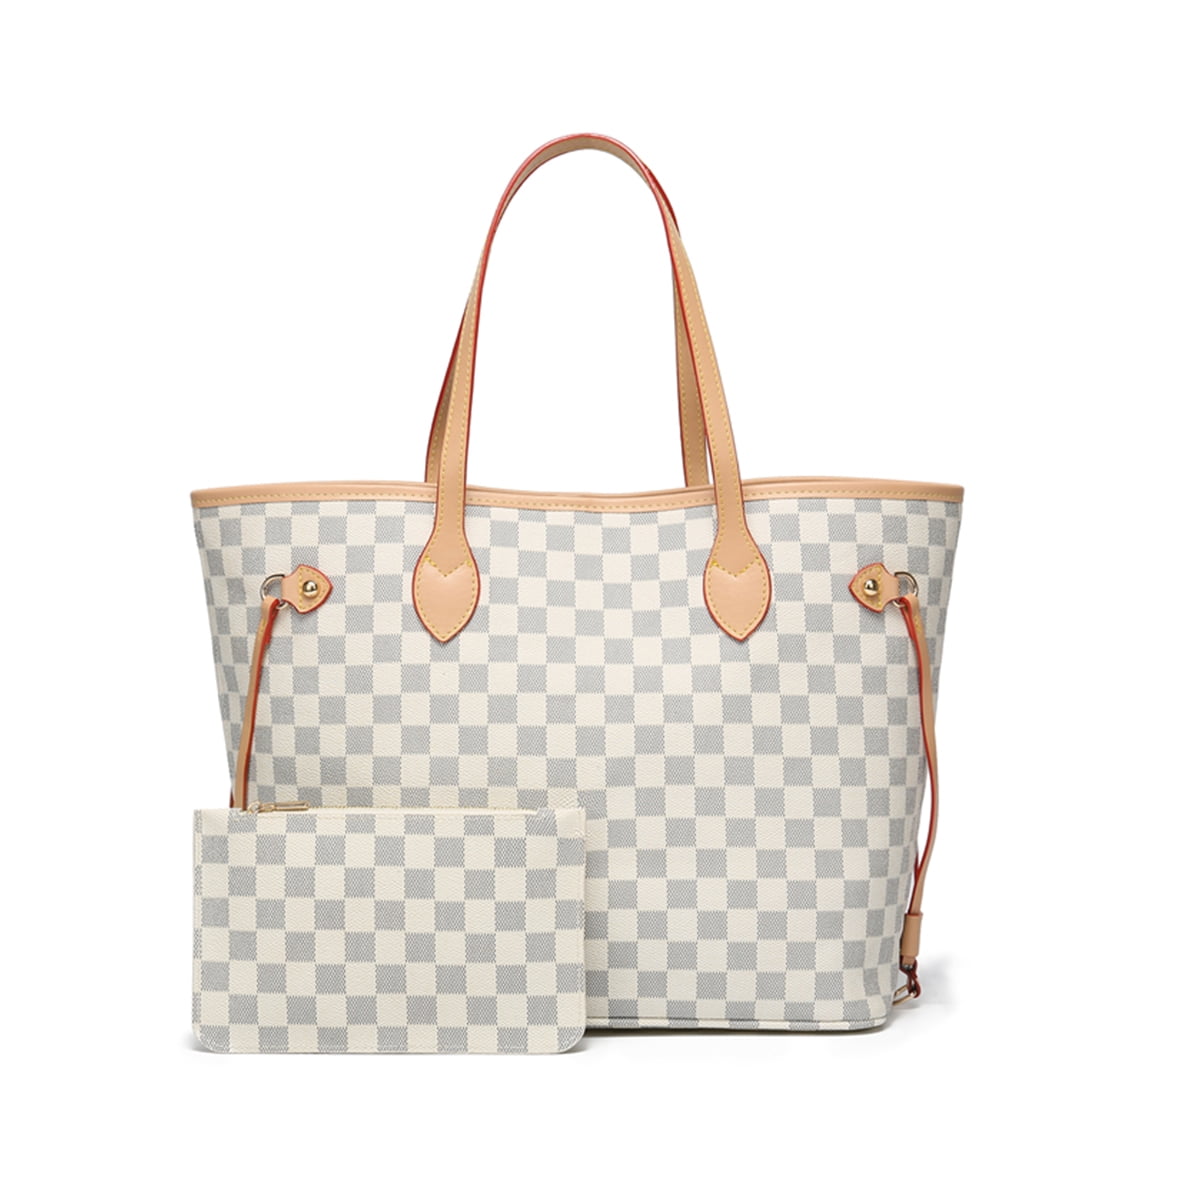 AN-VTBGI373A Details about   Printed Women Large Tote Bag Shopping Travel Bag Shoulder Handbag 